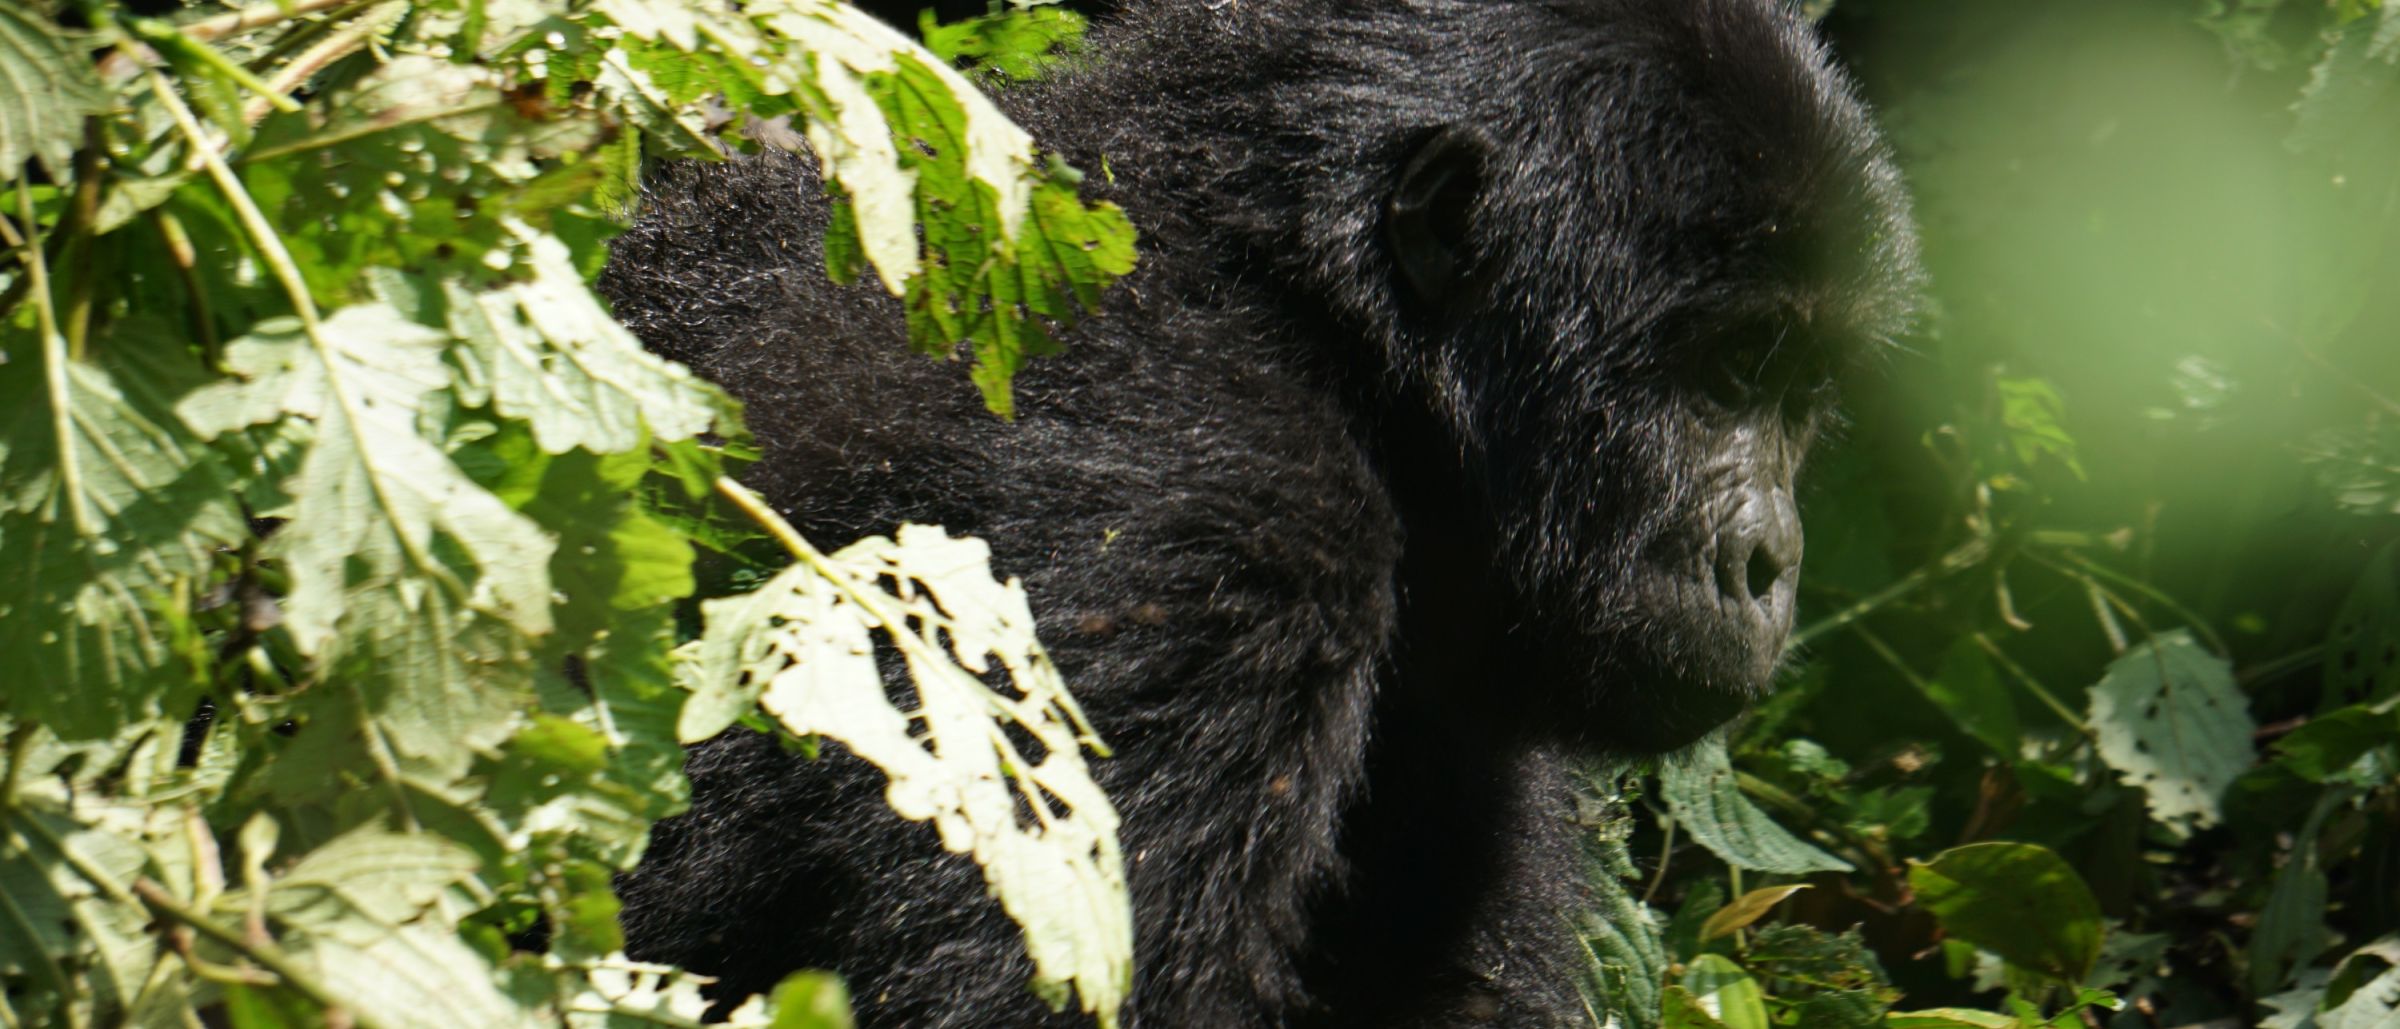 Gorilla in den Wäldern Ugandas